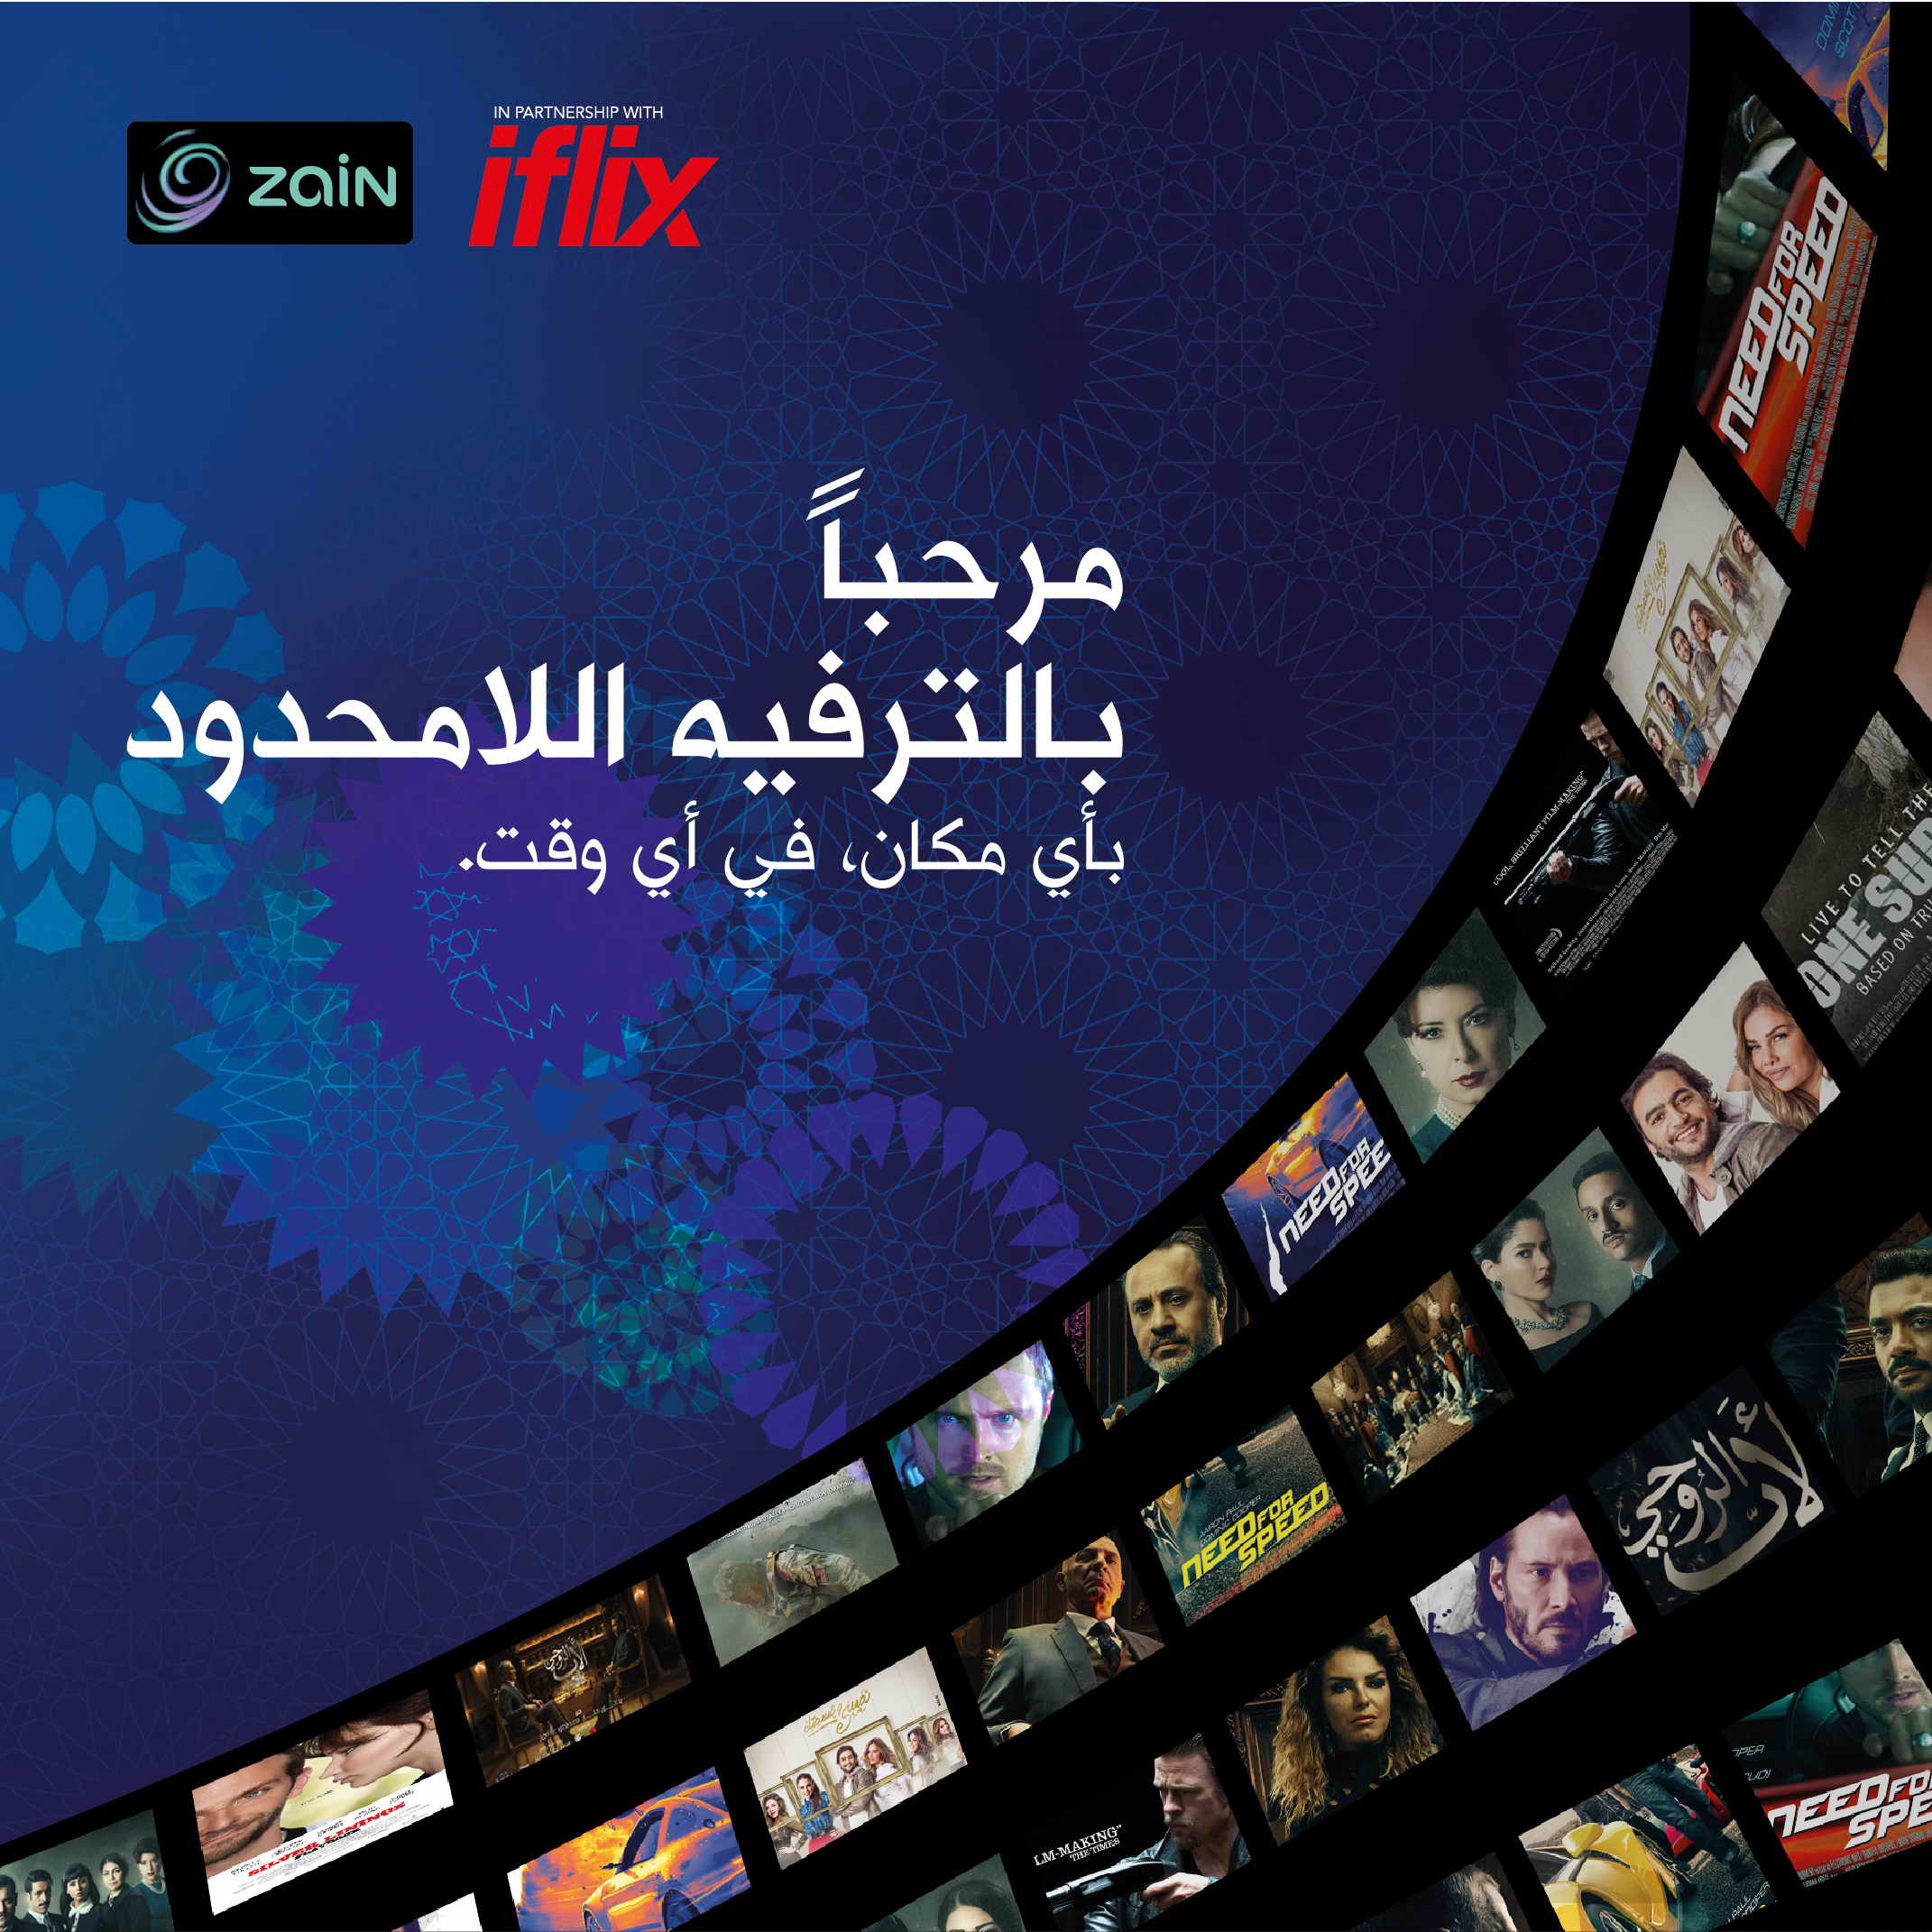 “زين” تطلق رسميا خدمة iflix لبث محتوى الفيديو عبر الإنترنت